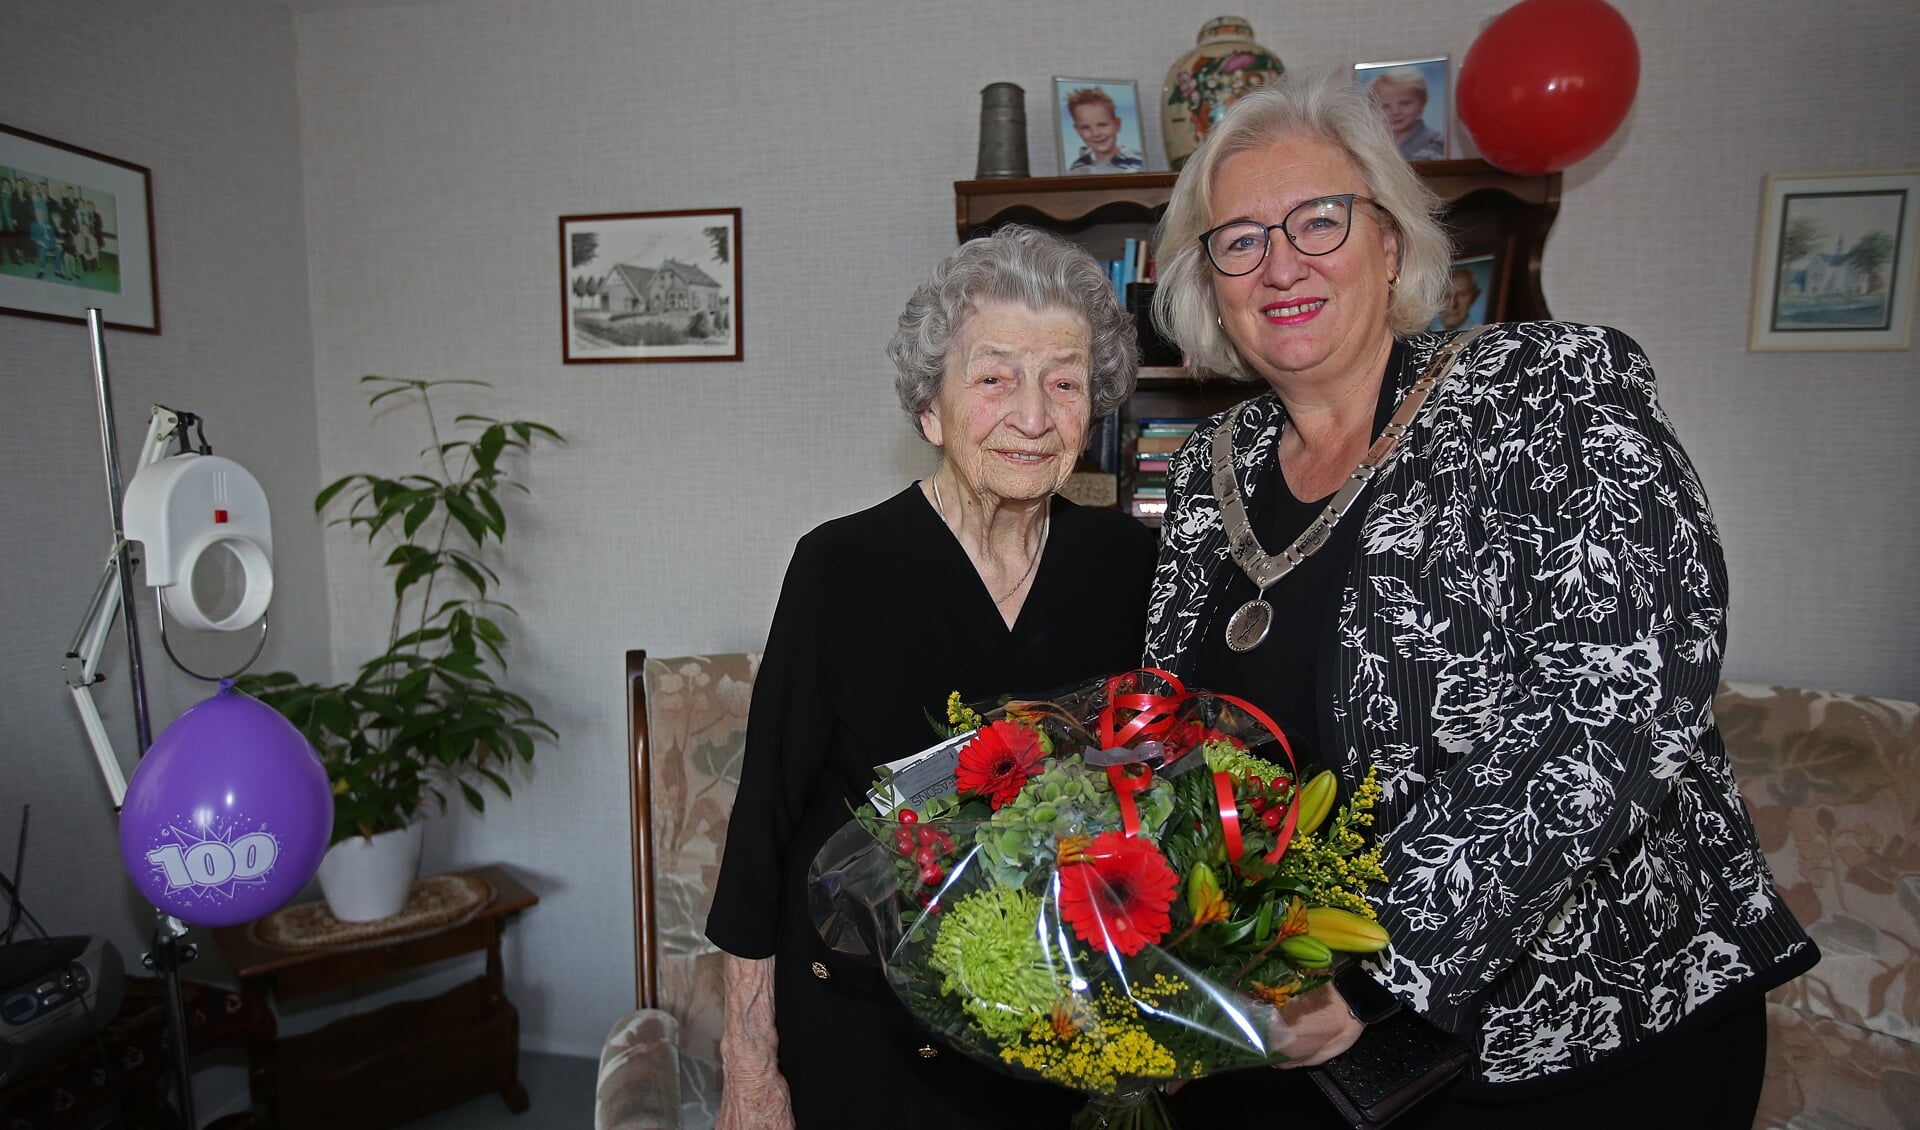 Burgemeester Marianne Schuurmans brengt een bezoek aan Maria Kant en verrast haar met bloemen. 